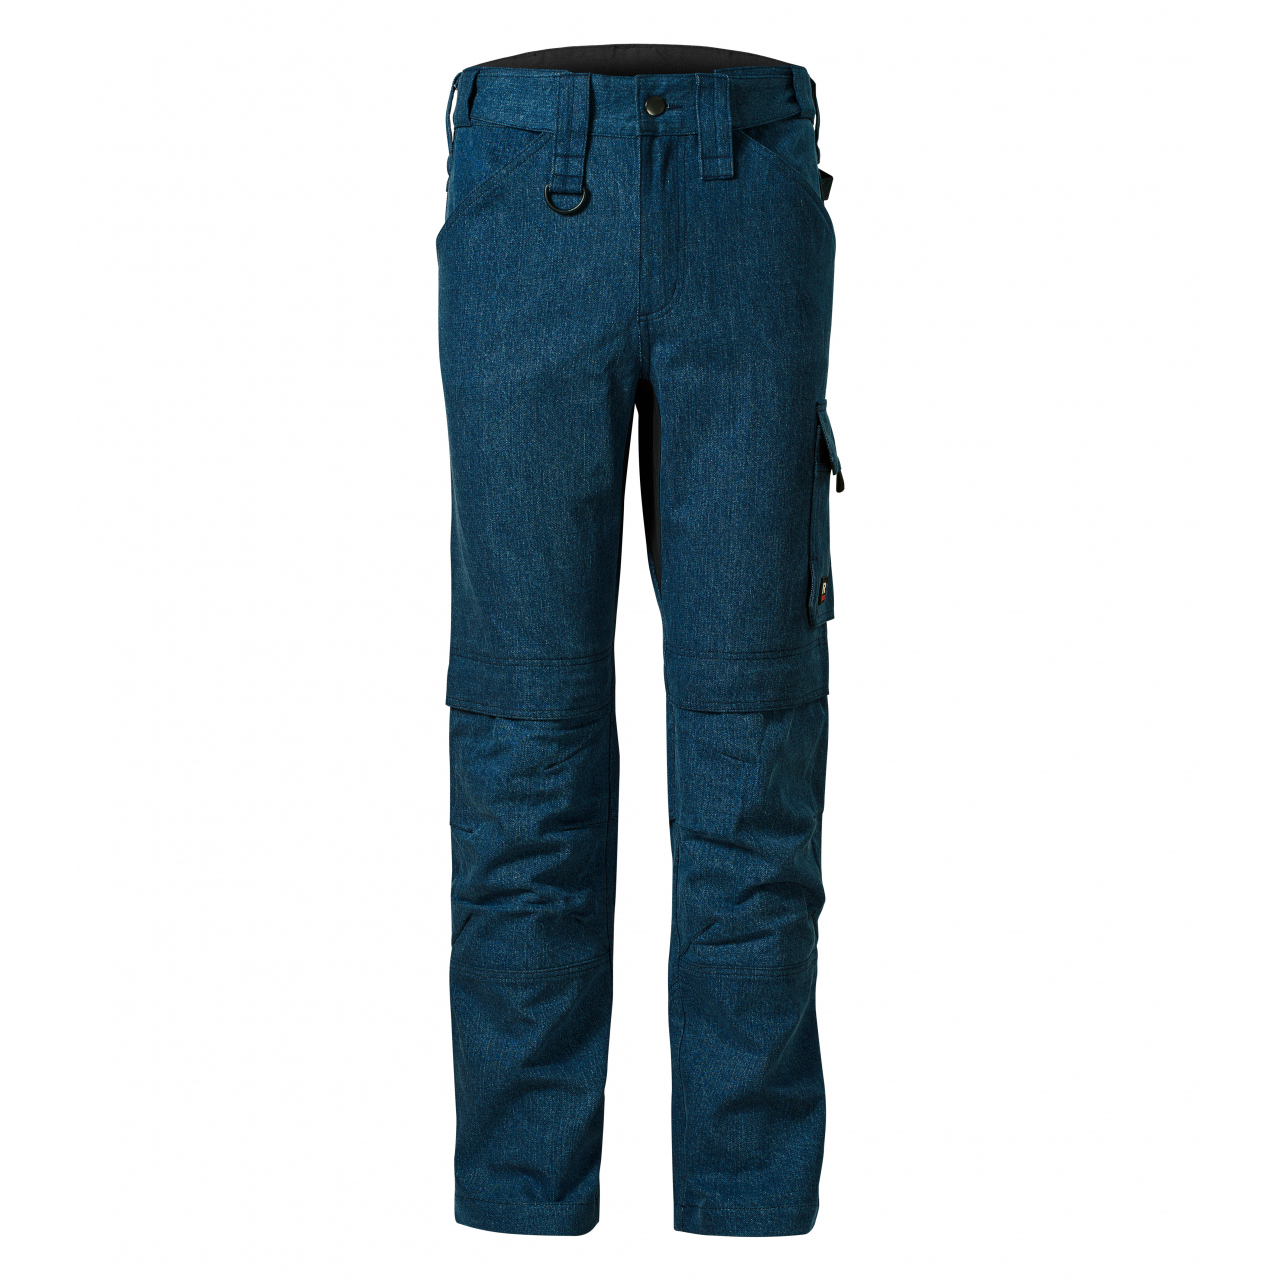 Pracovní džíny pánské Rimeck Vertex - tmavě modré, 44